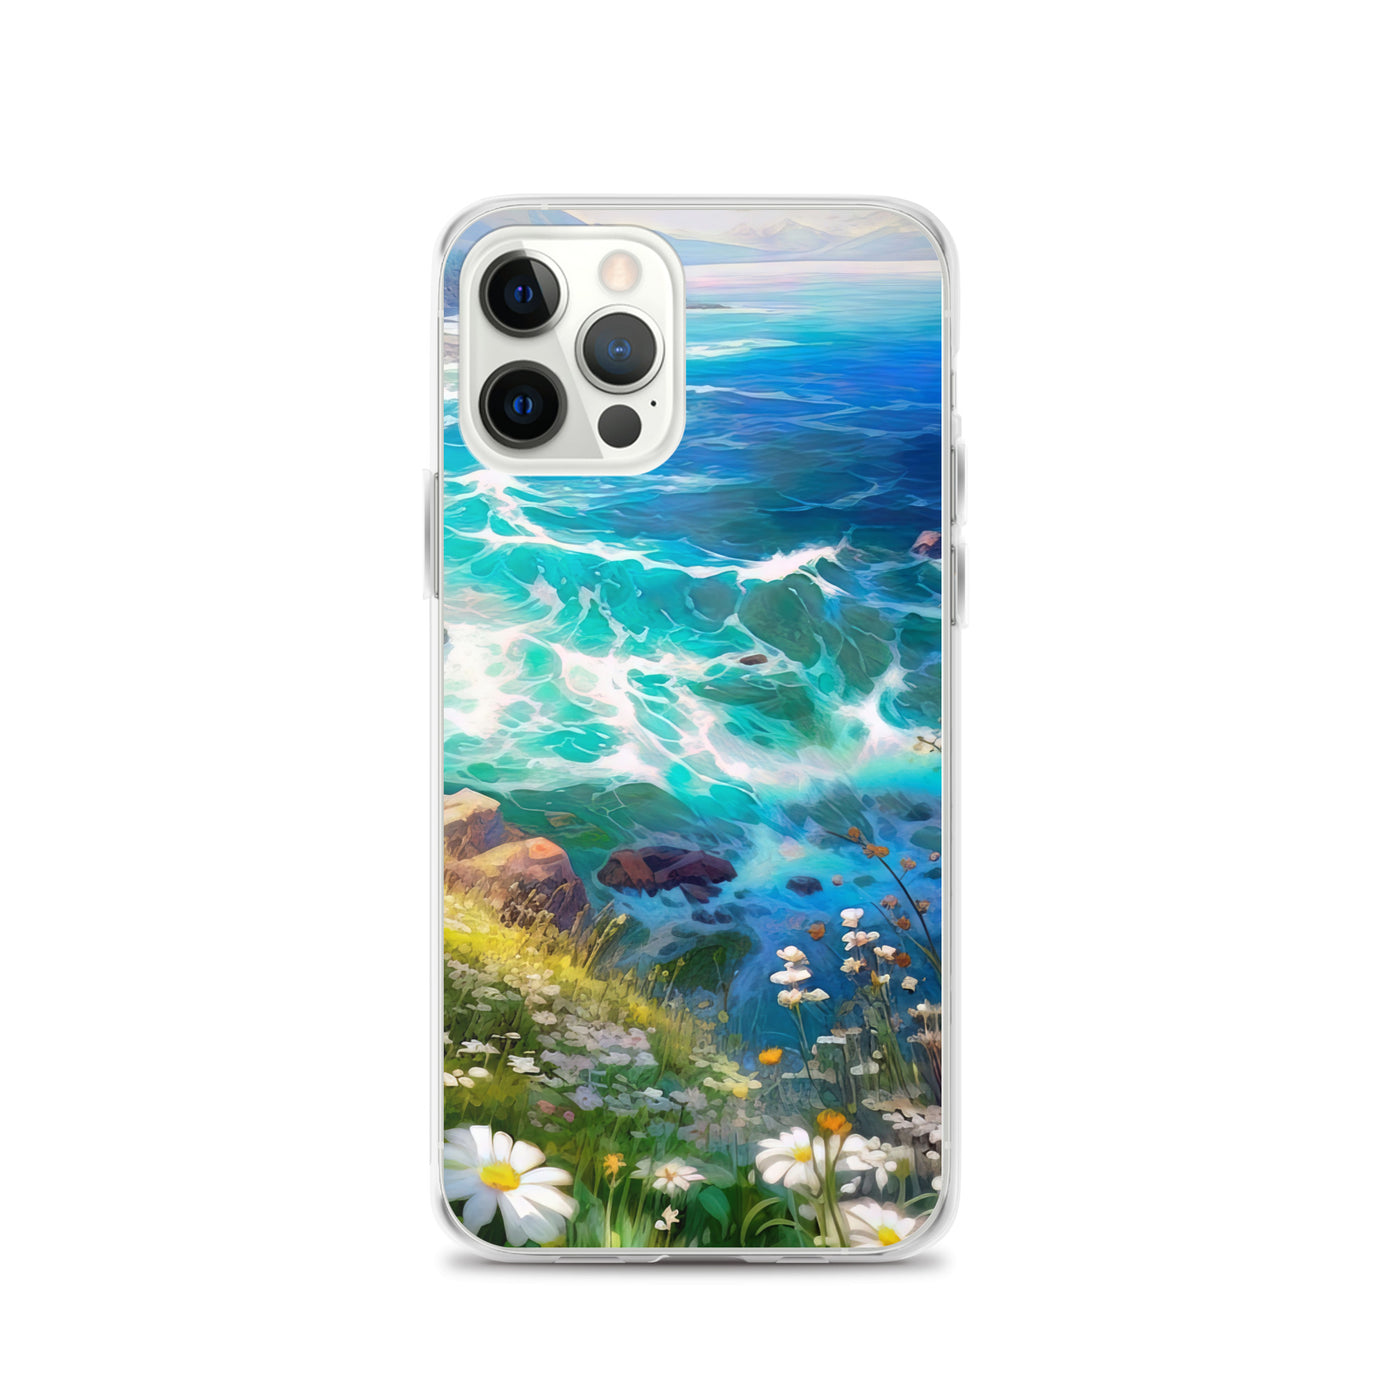 Berge, Blumen, Fluss und Steine - Malerei - iPhone Schutzhülle (durchsichtig) camping xxx iPhone 12 Pro